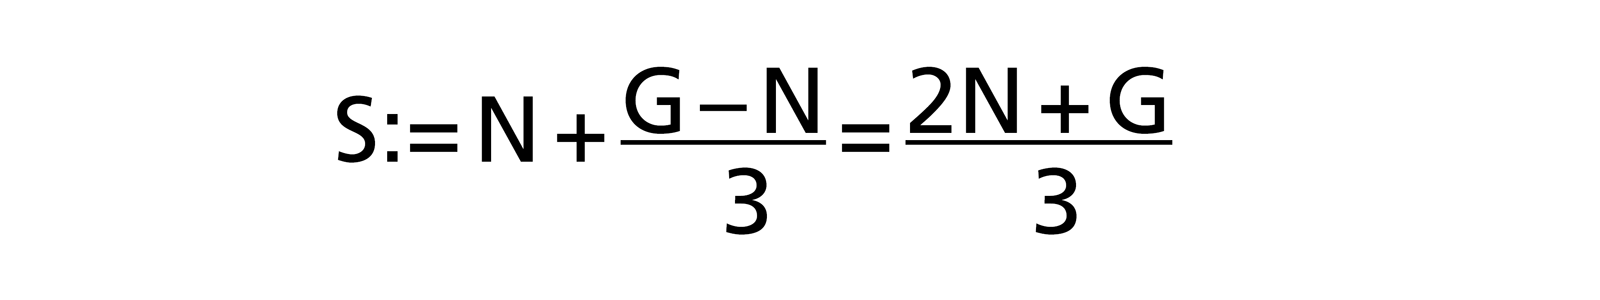 Schätzformel nach Reiter (Optimismus Korrektur): S:= (2N + G) / 3